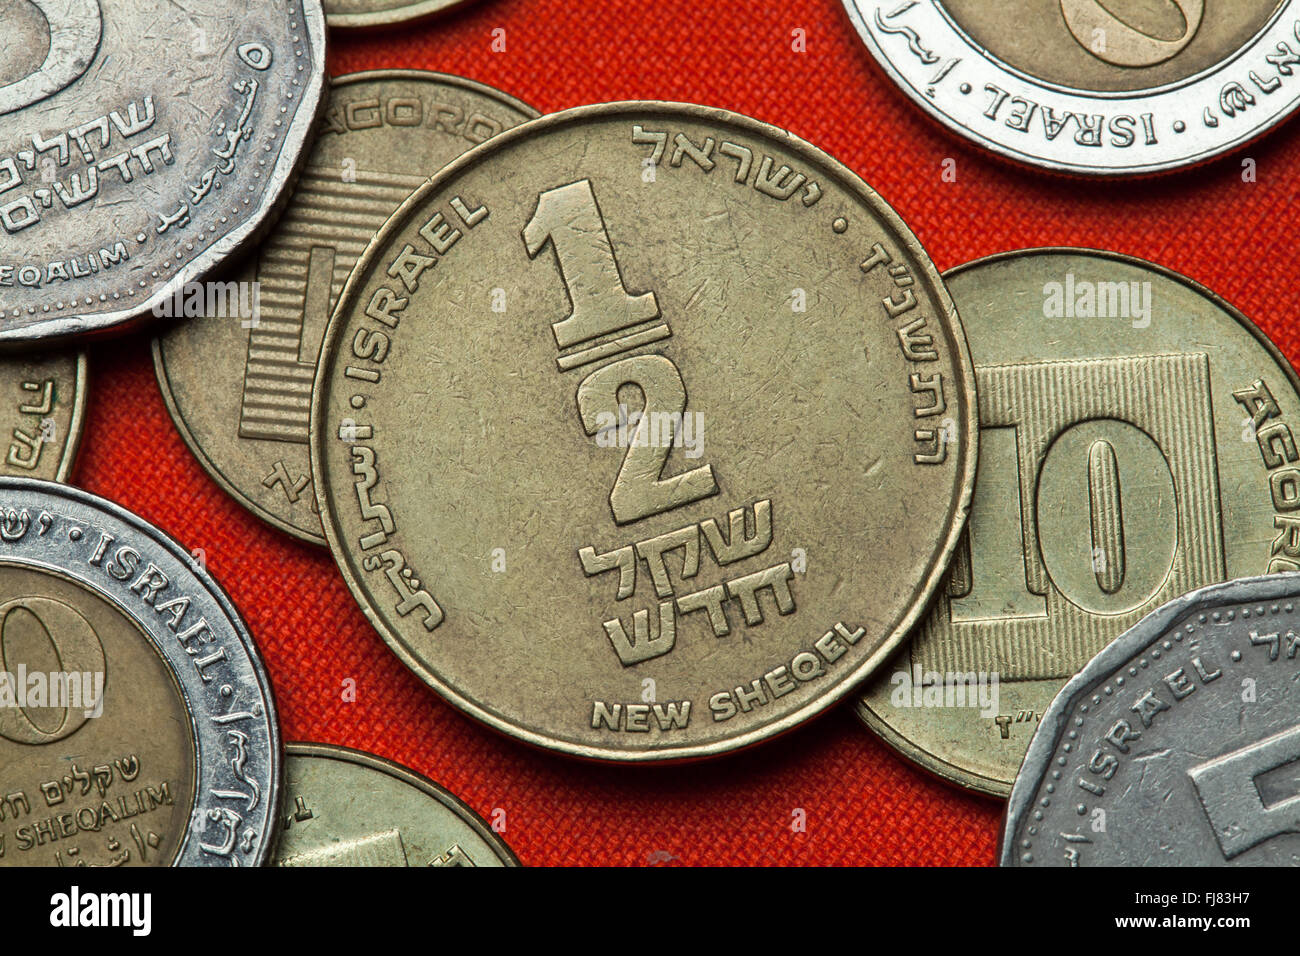 Monete di Israele. Metà israeliano nuovo shekel coin. Foto Stock